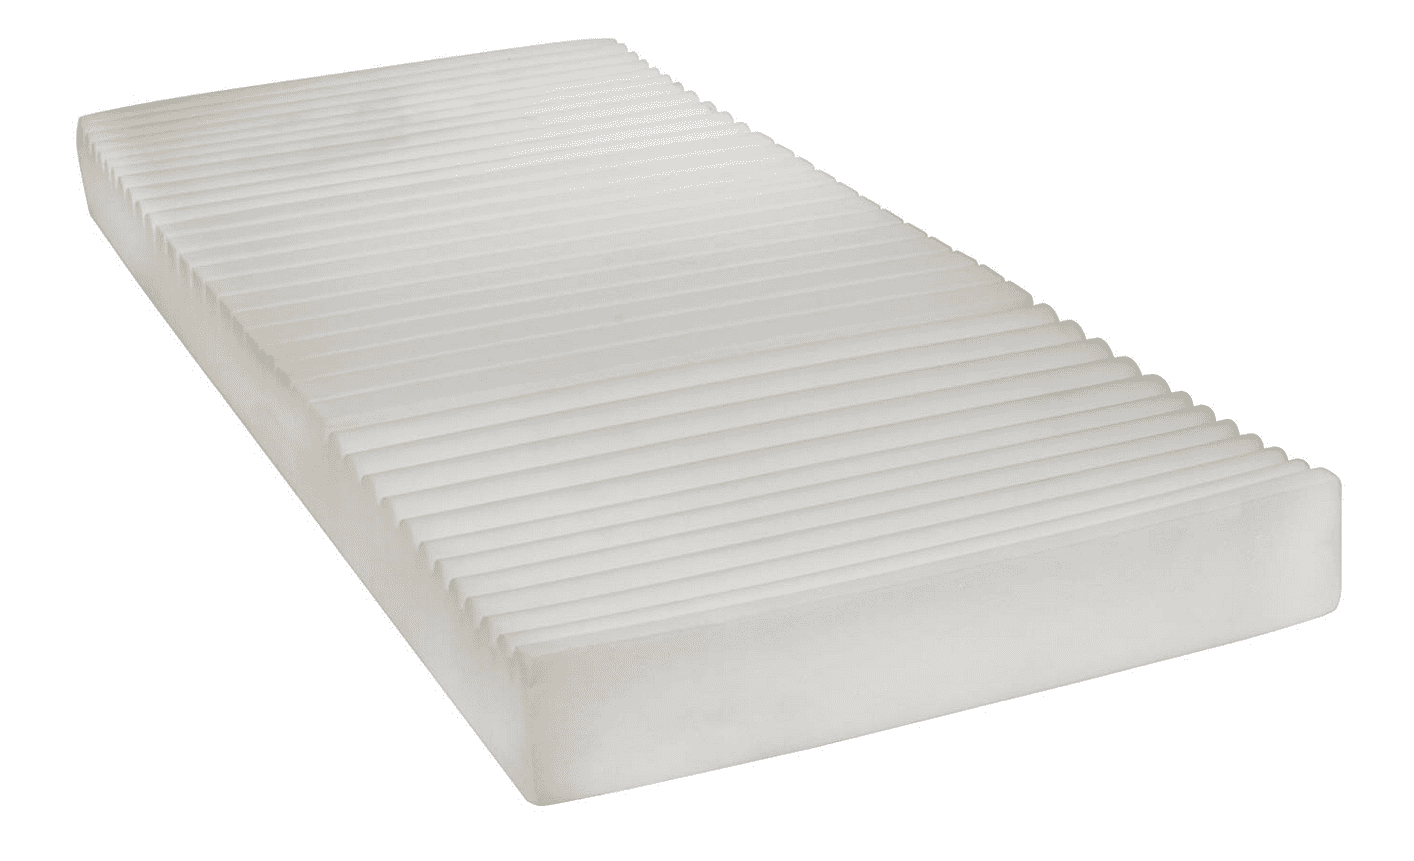 therapeutic mattress pad walmart